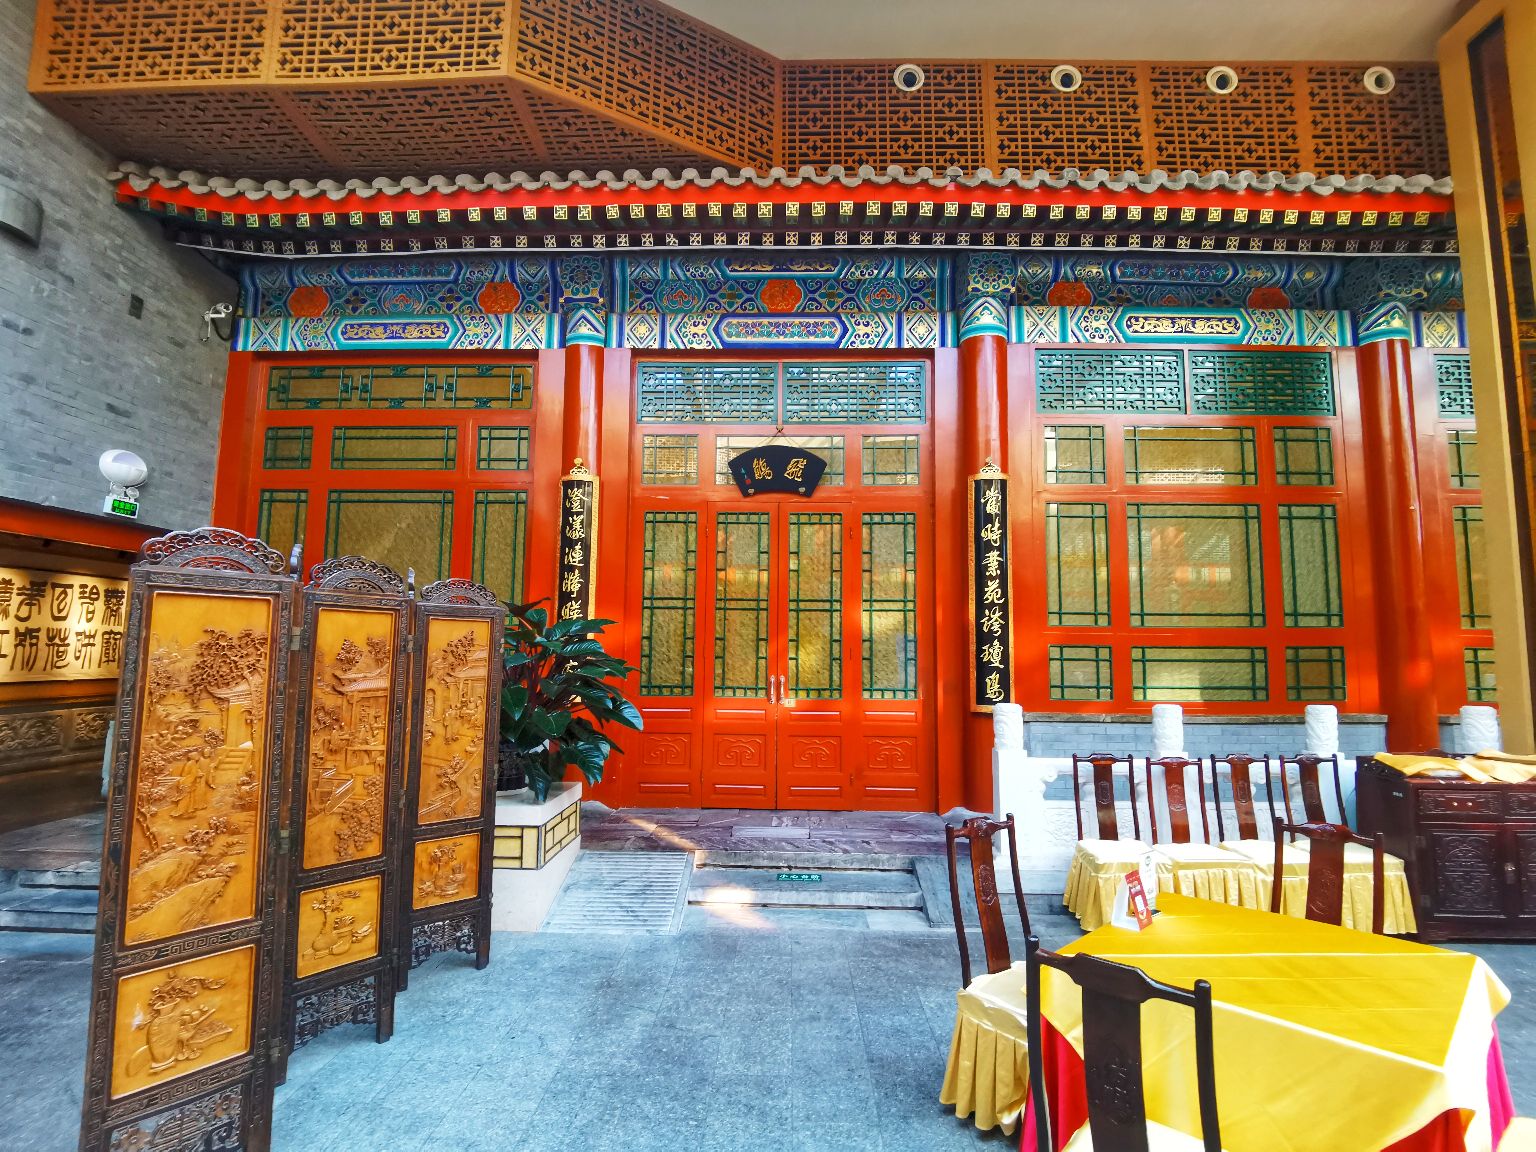 Fangshan Restaurant